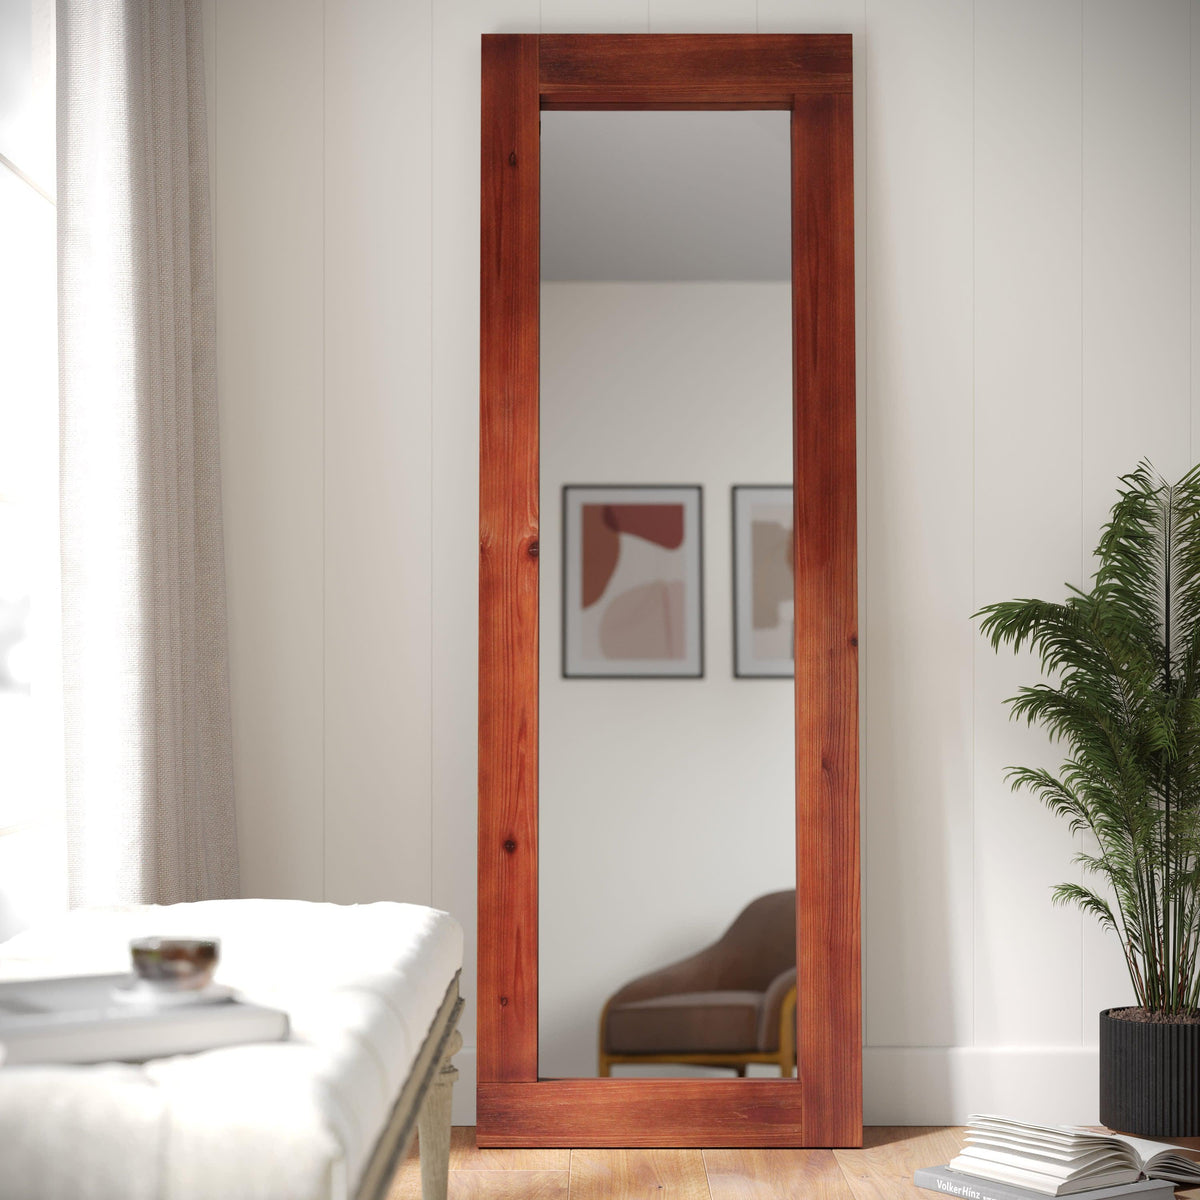 Dark Brown |#| Rustic 22x65 Wood Framed Floor Length Mirror-Wall Mount or Leaning - Dark Brown